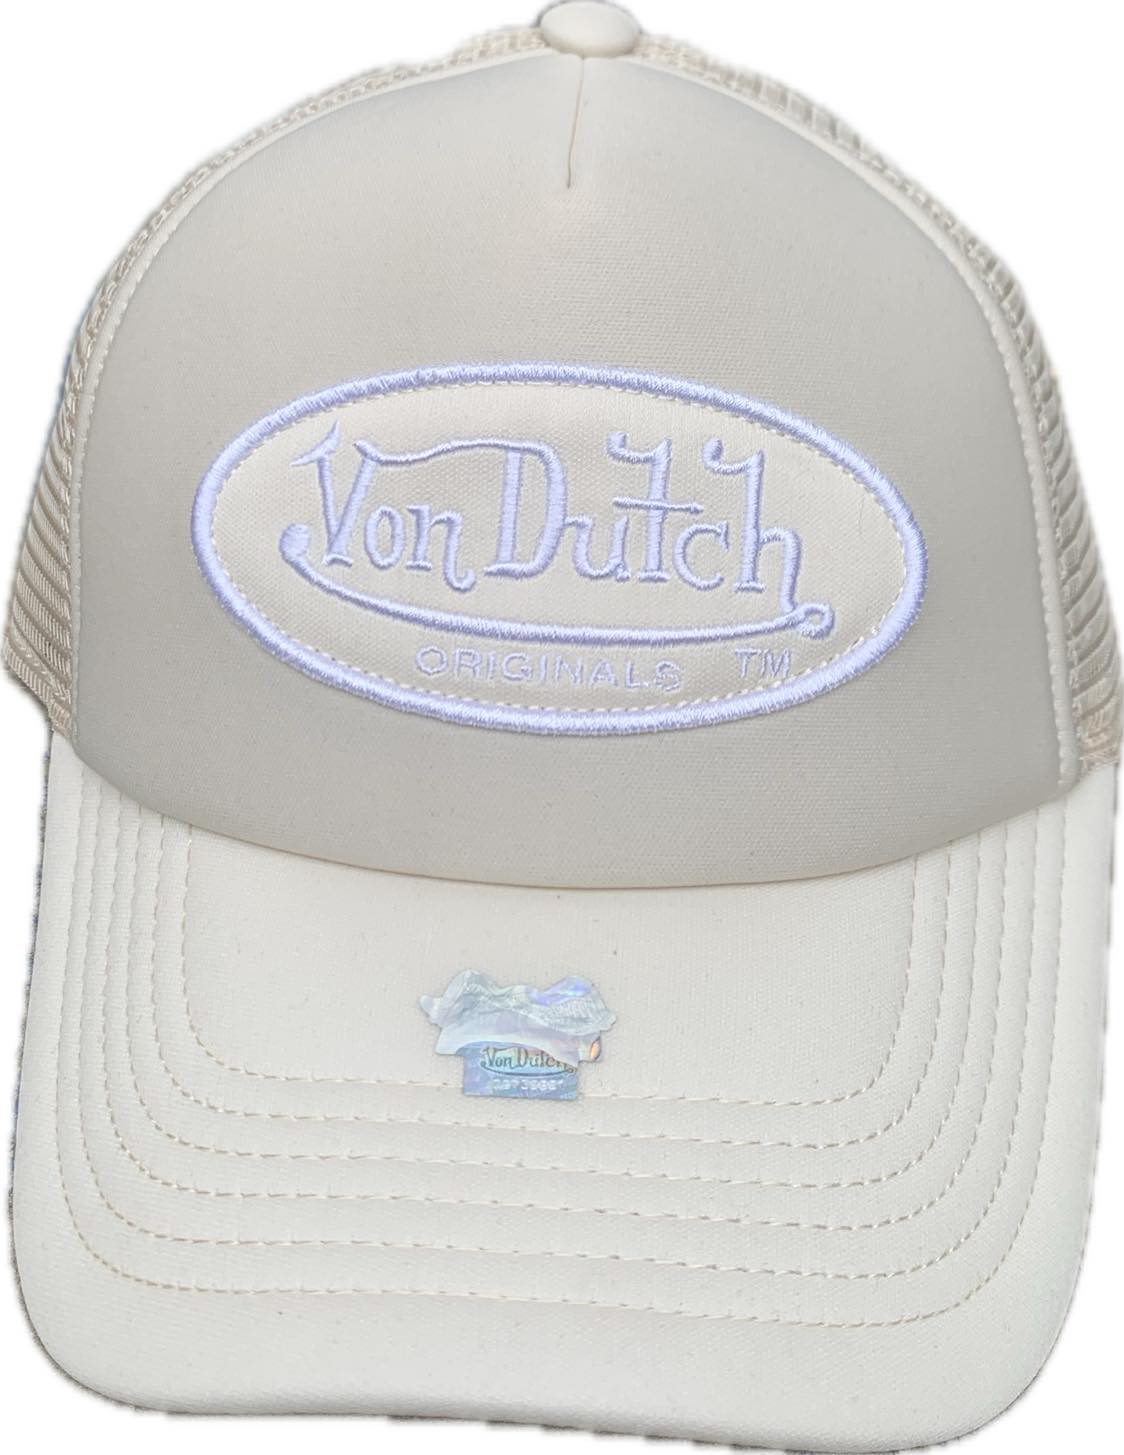 Von Dutch Boston Trucker Cap - Beige / Cream